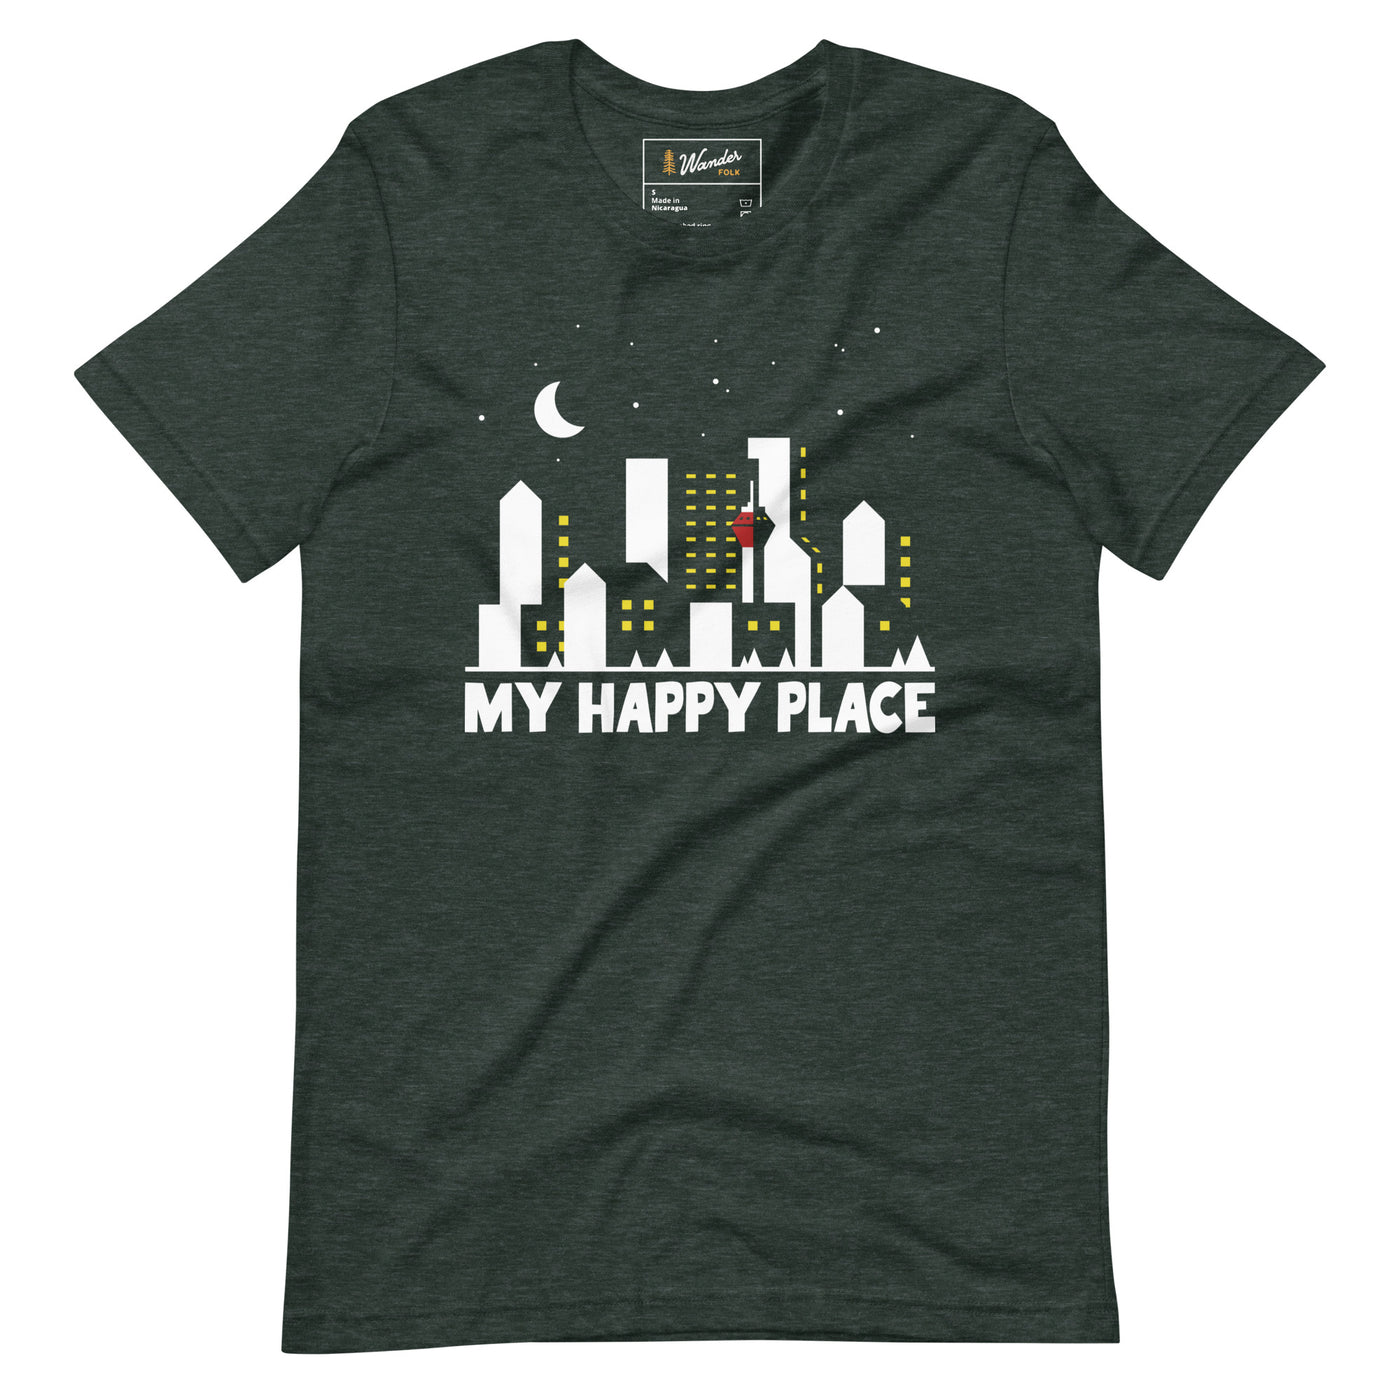 My Happy Place - Unisex